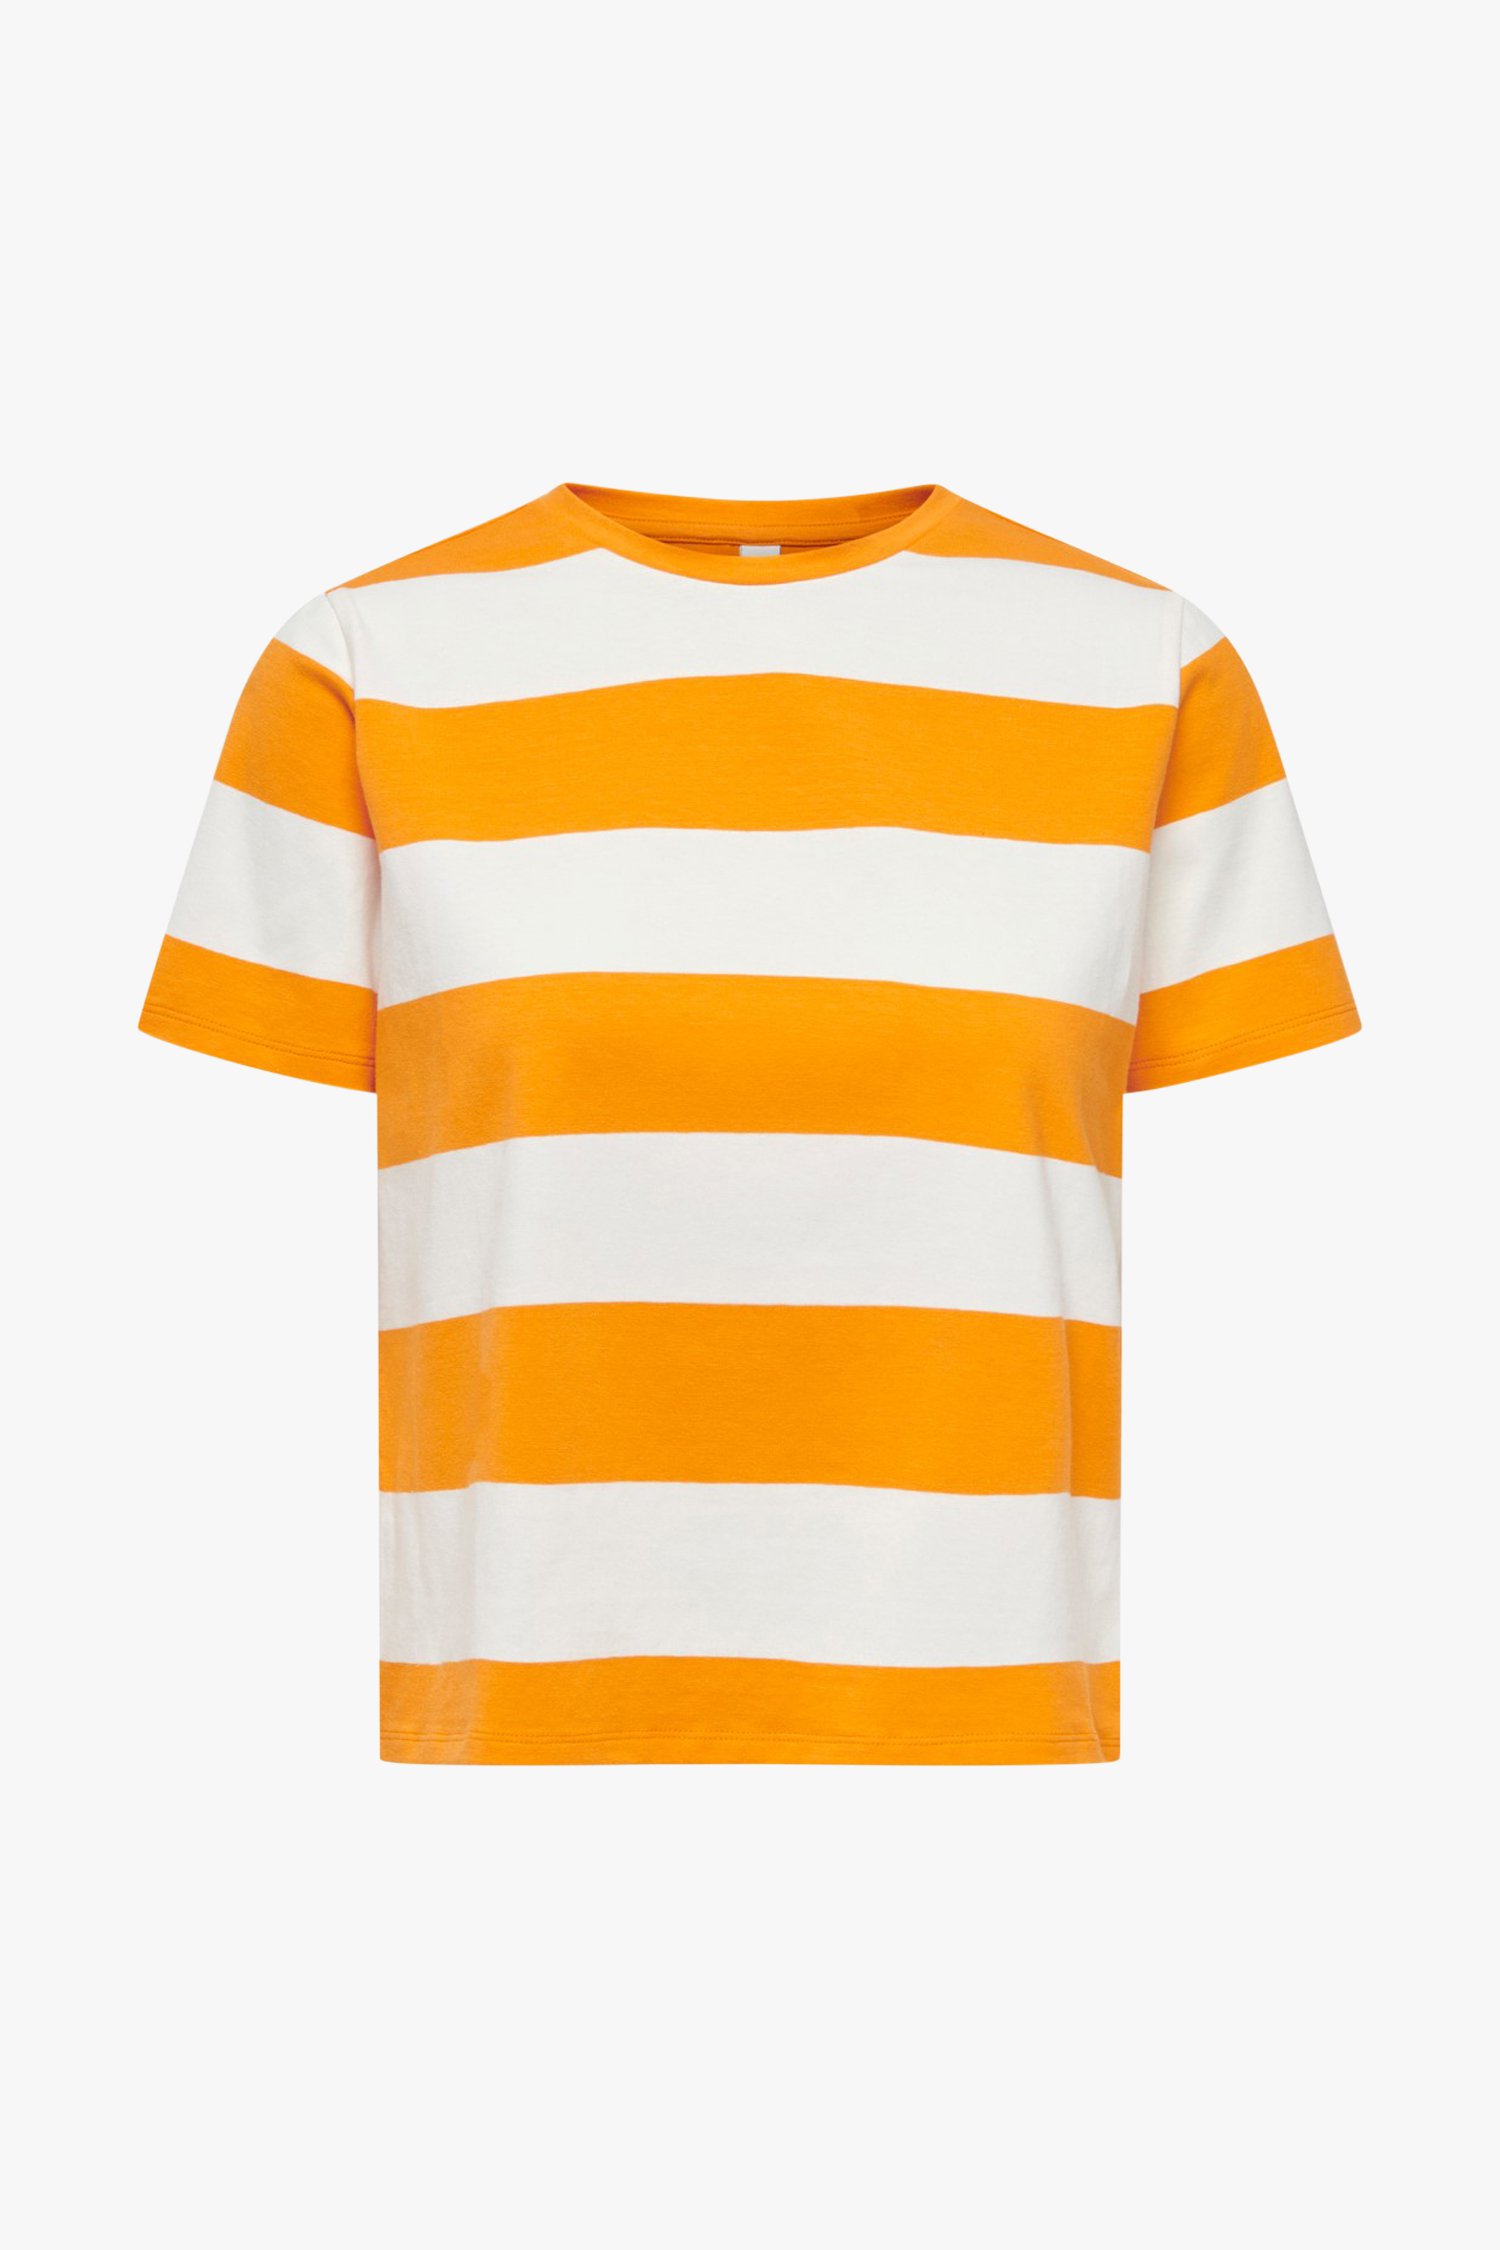 Oranje gestreept T-shirt van JDY voor Dames